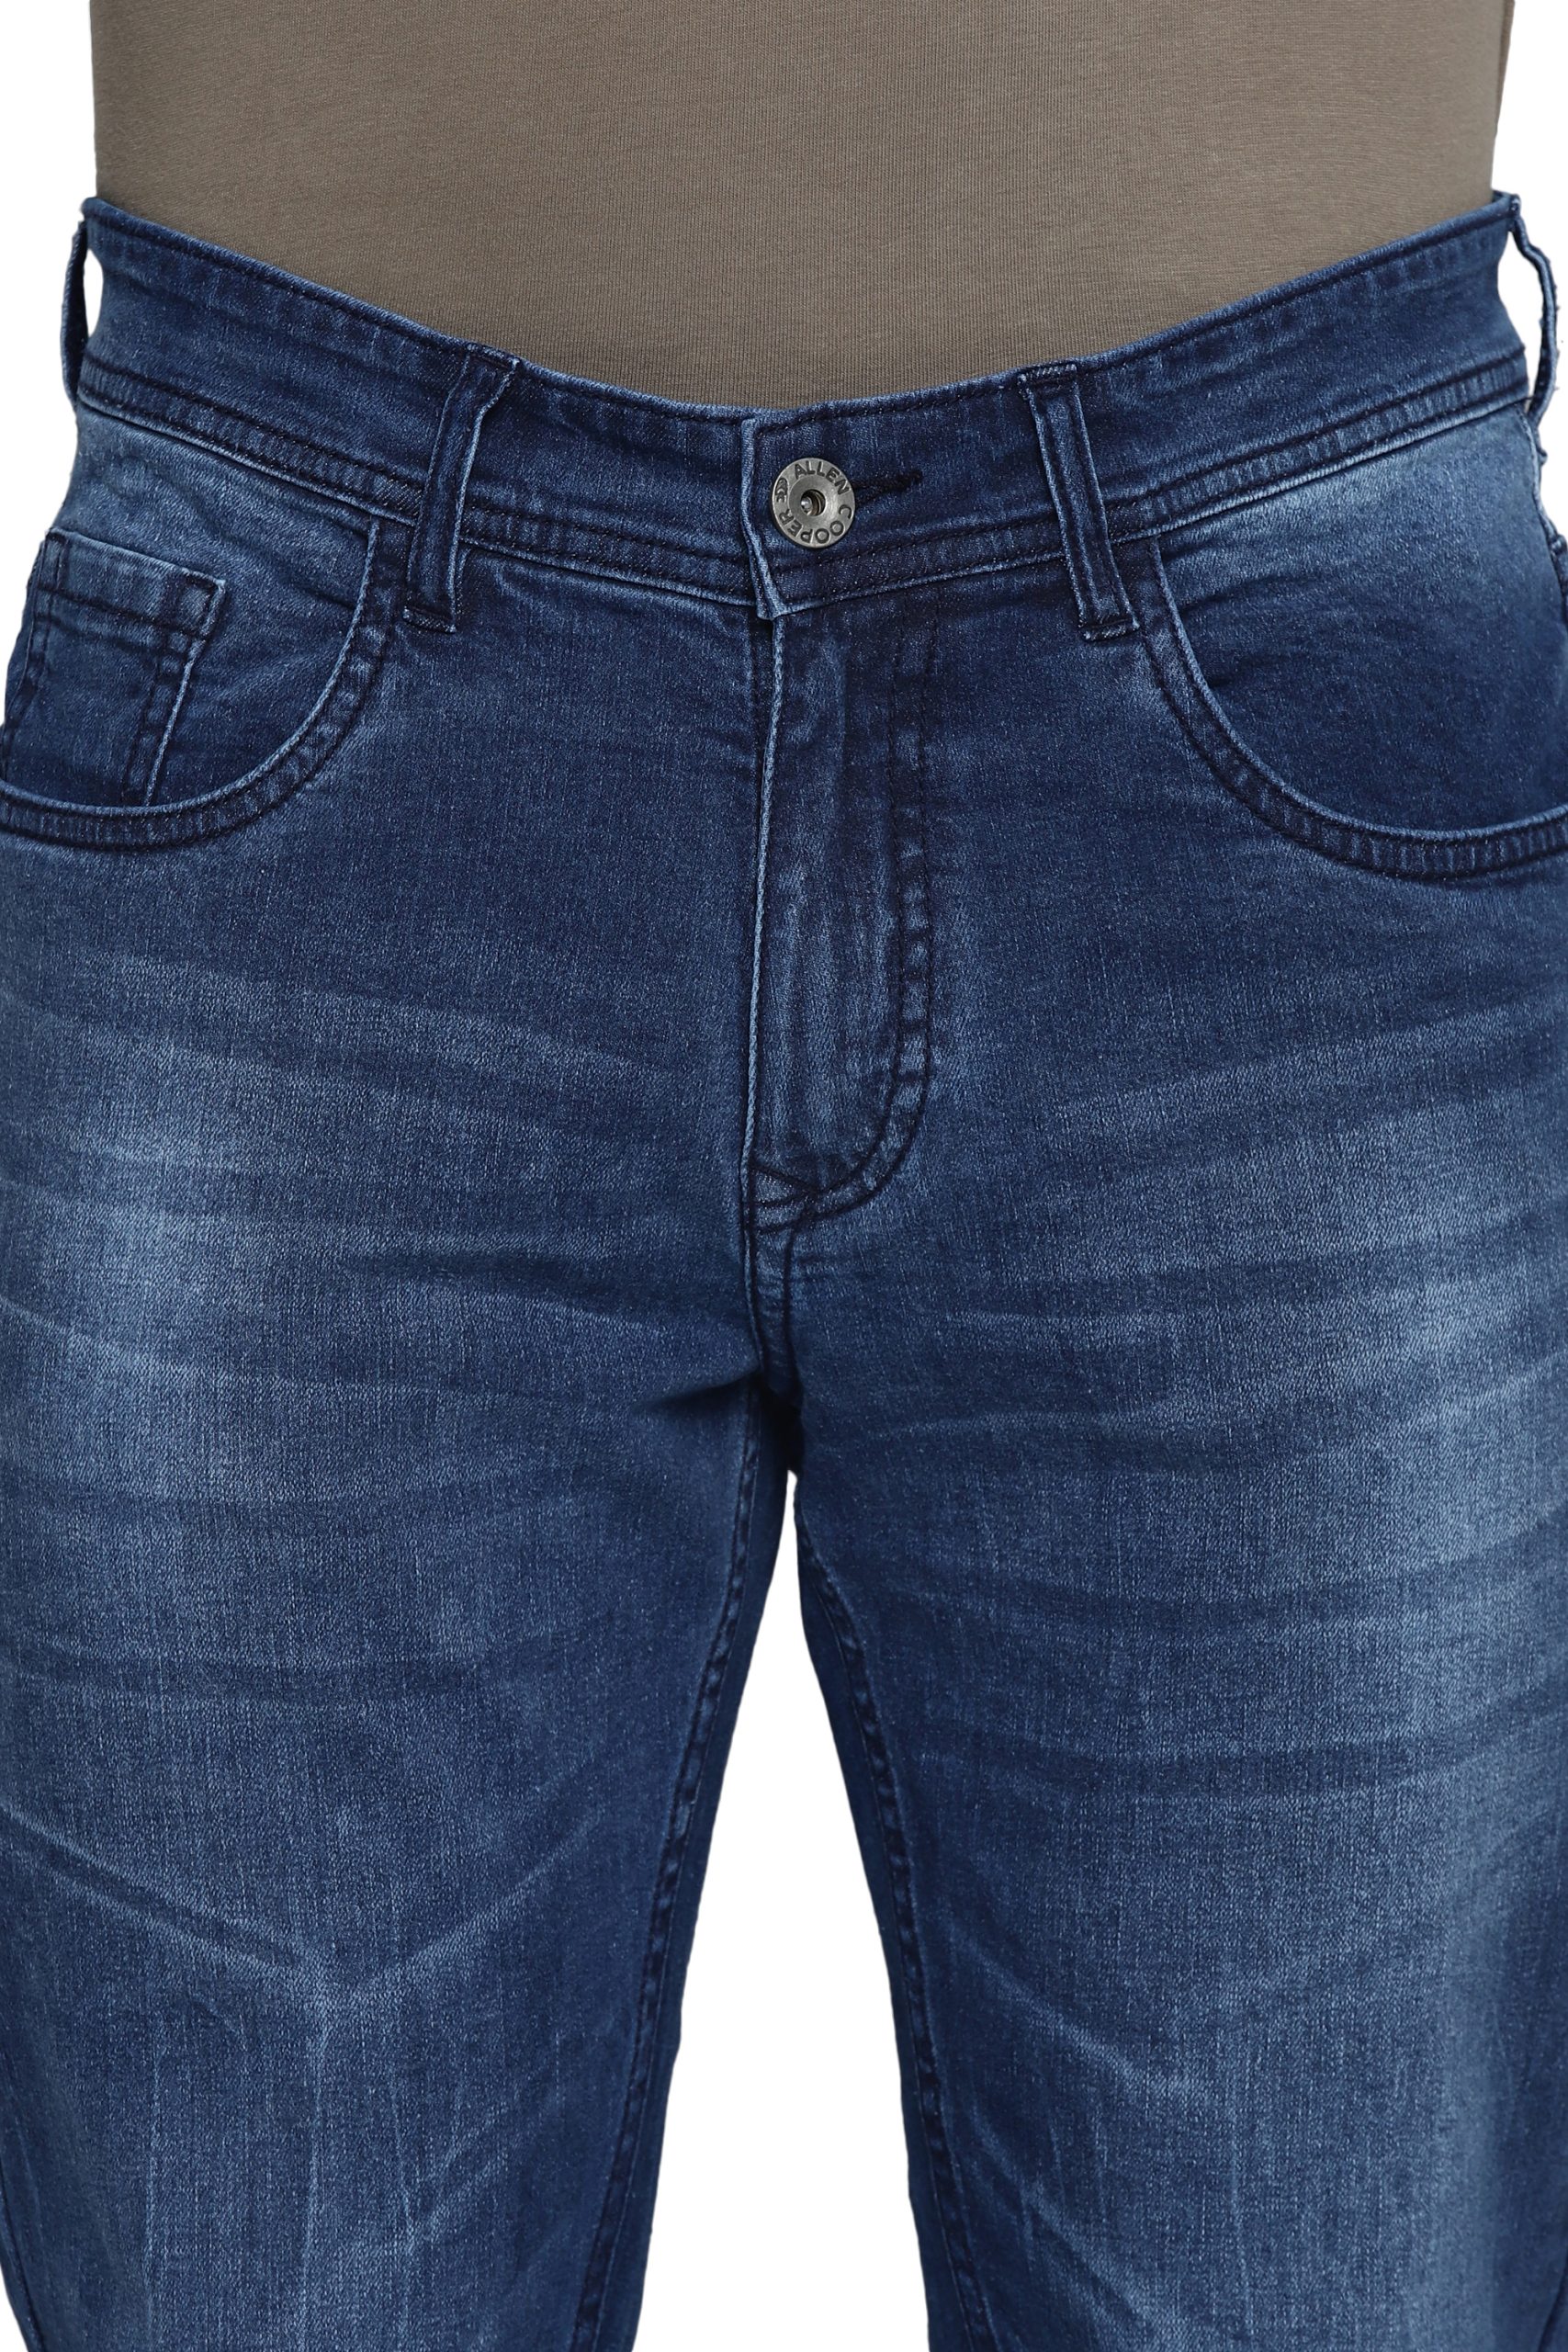 Allen Cooper Denim Jeans For Men - Allen Cooper | Most Comfortable ...